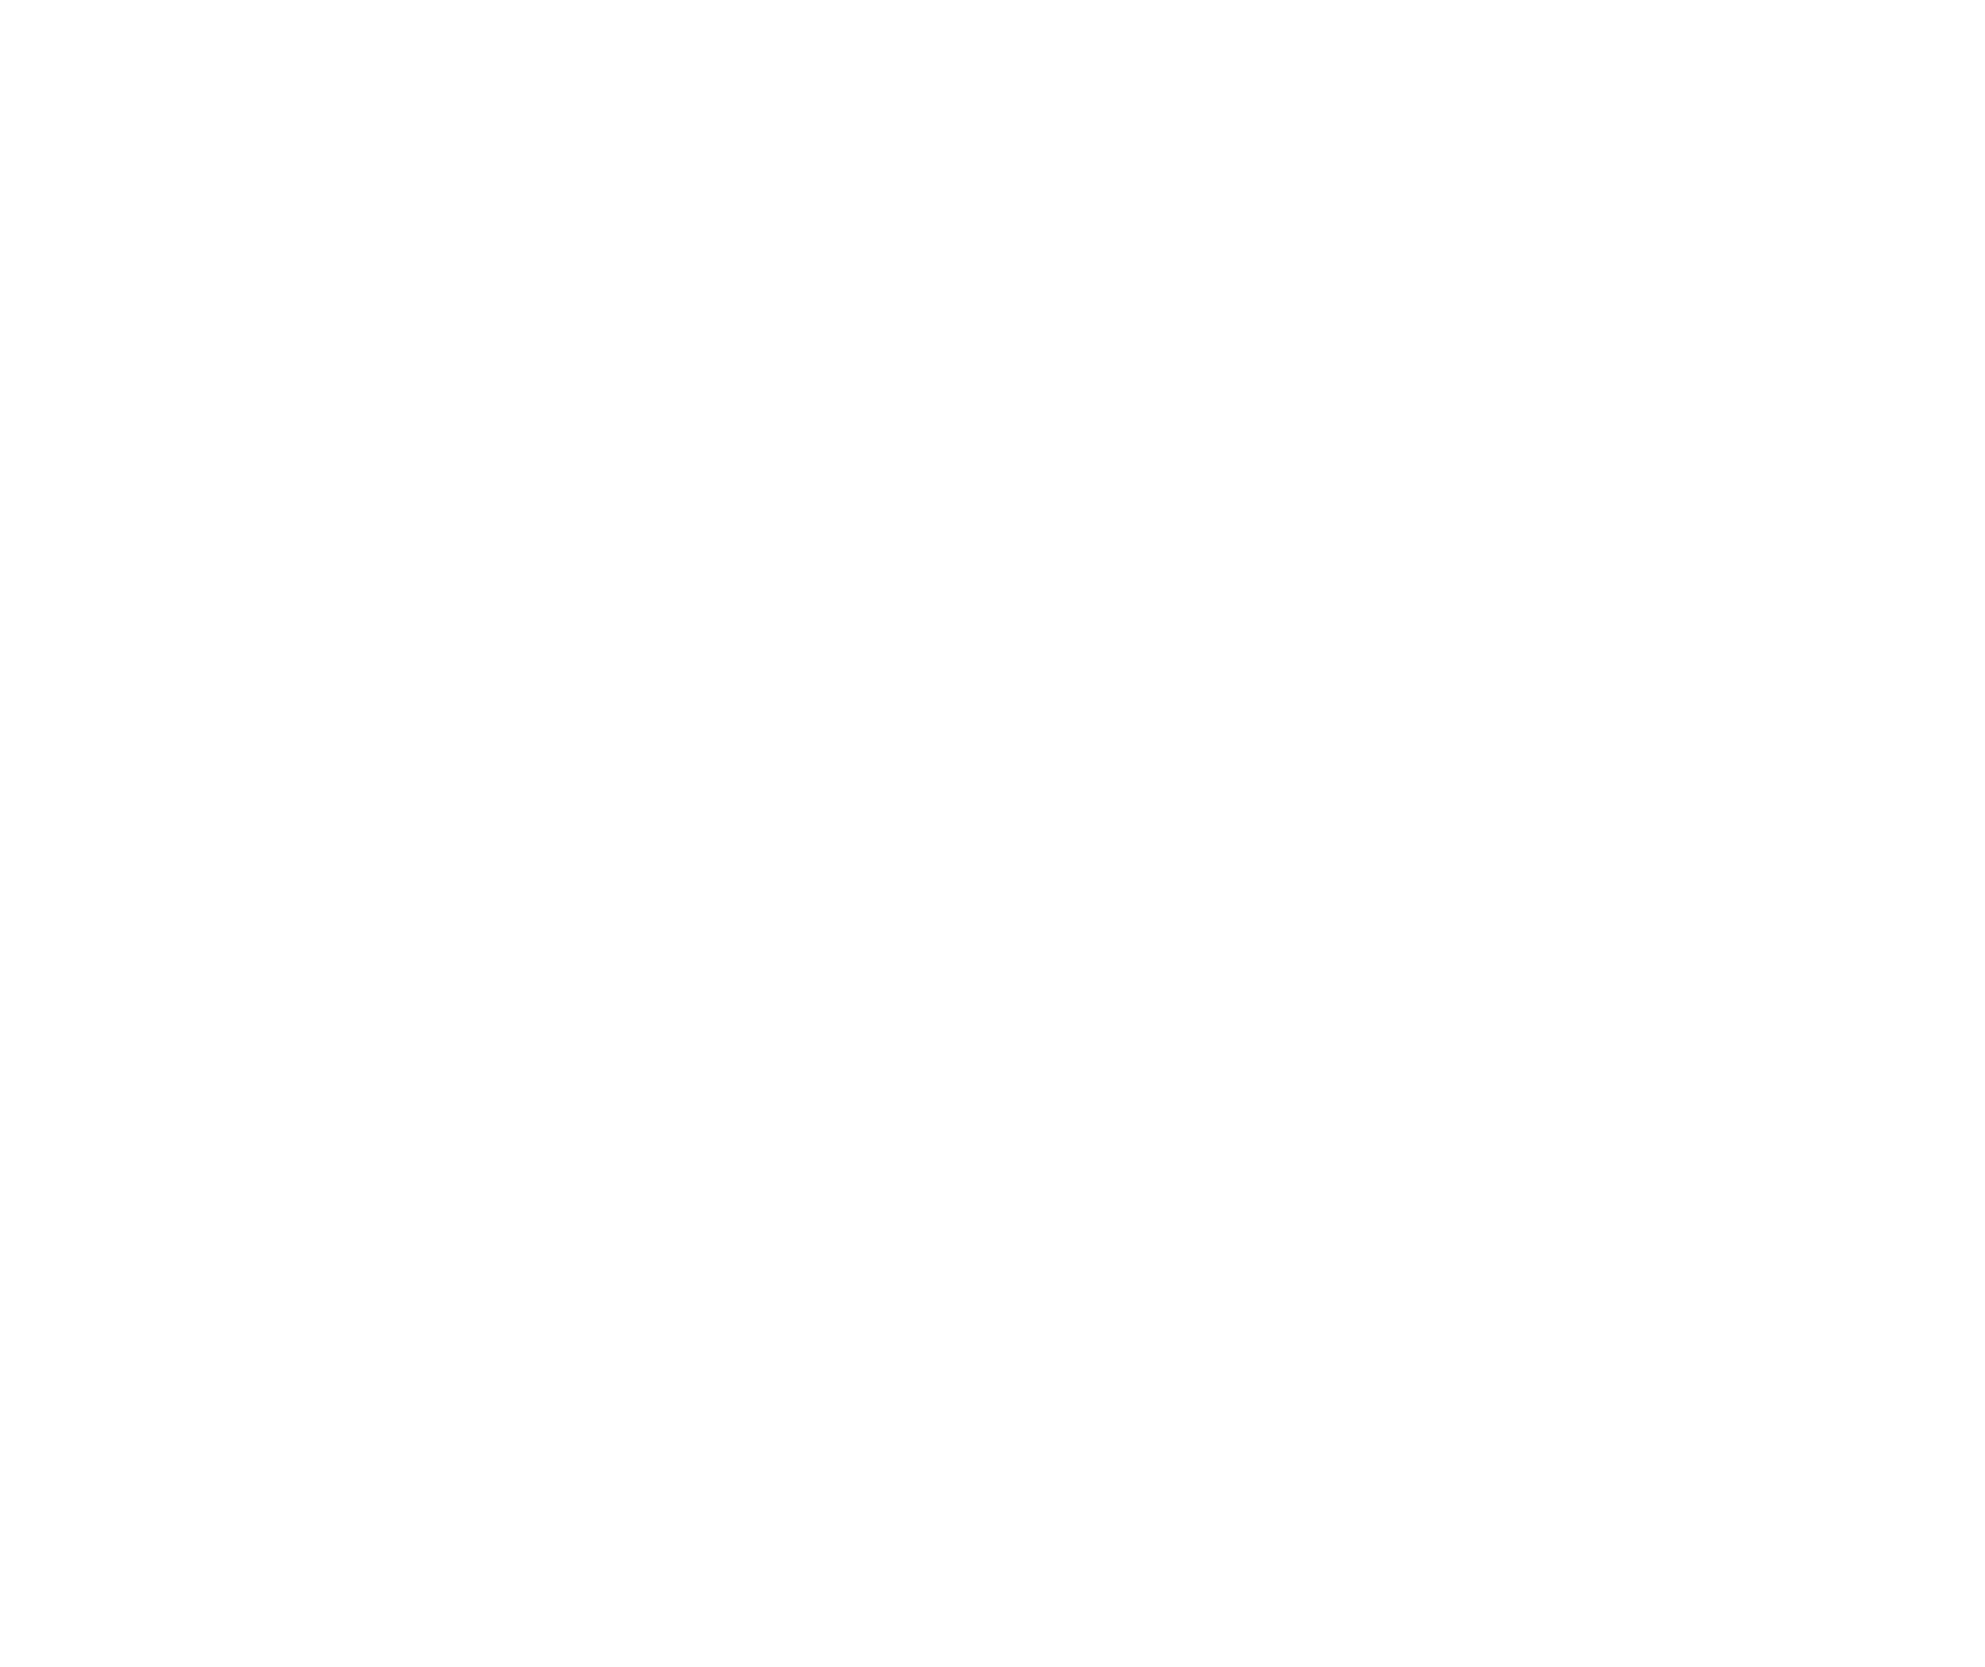 Gartner Peer Insights™ Customer Choice 2022 logo